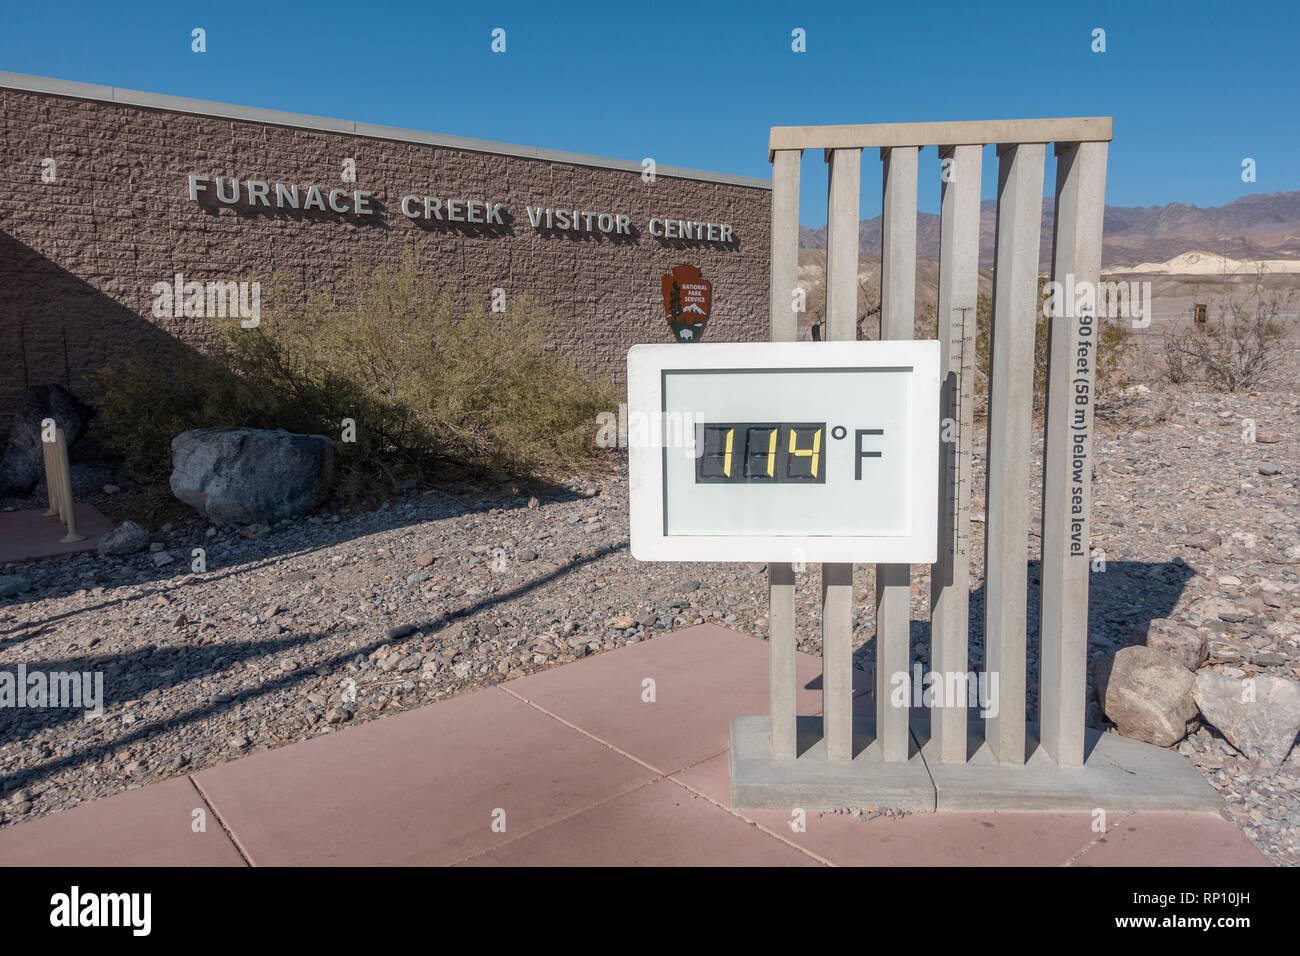 Mostrando 114℉ medidor de temperatura (45,6°C) fuera el Furnace Creek Visitor Center, Furnace Creek, California, Estados Unidos. Foto de stock